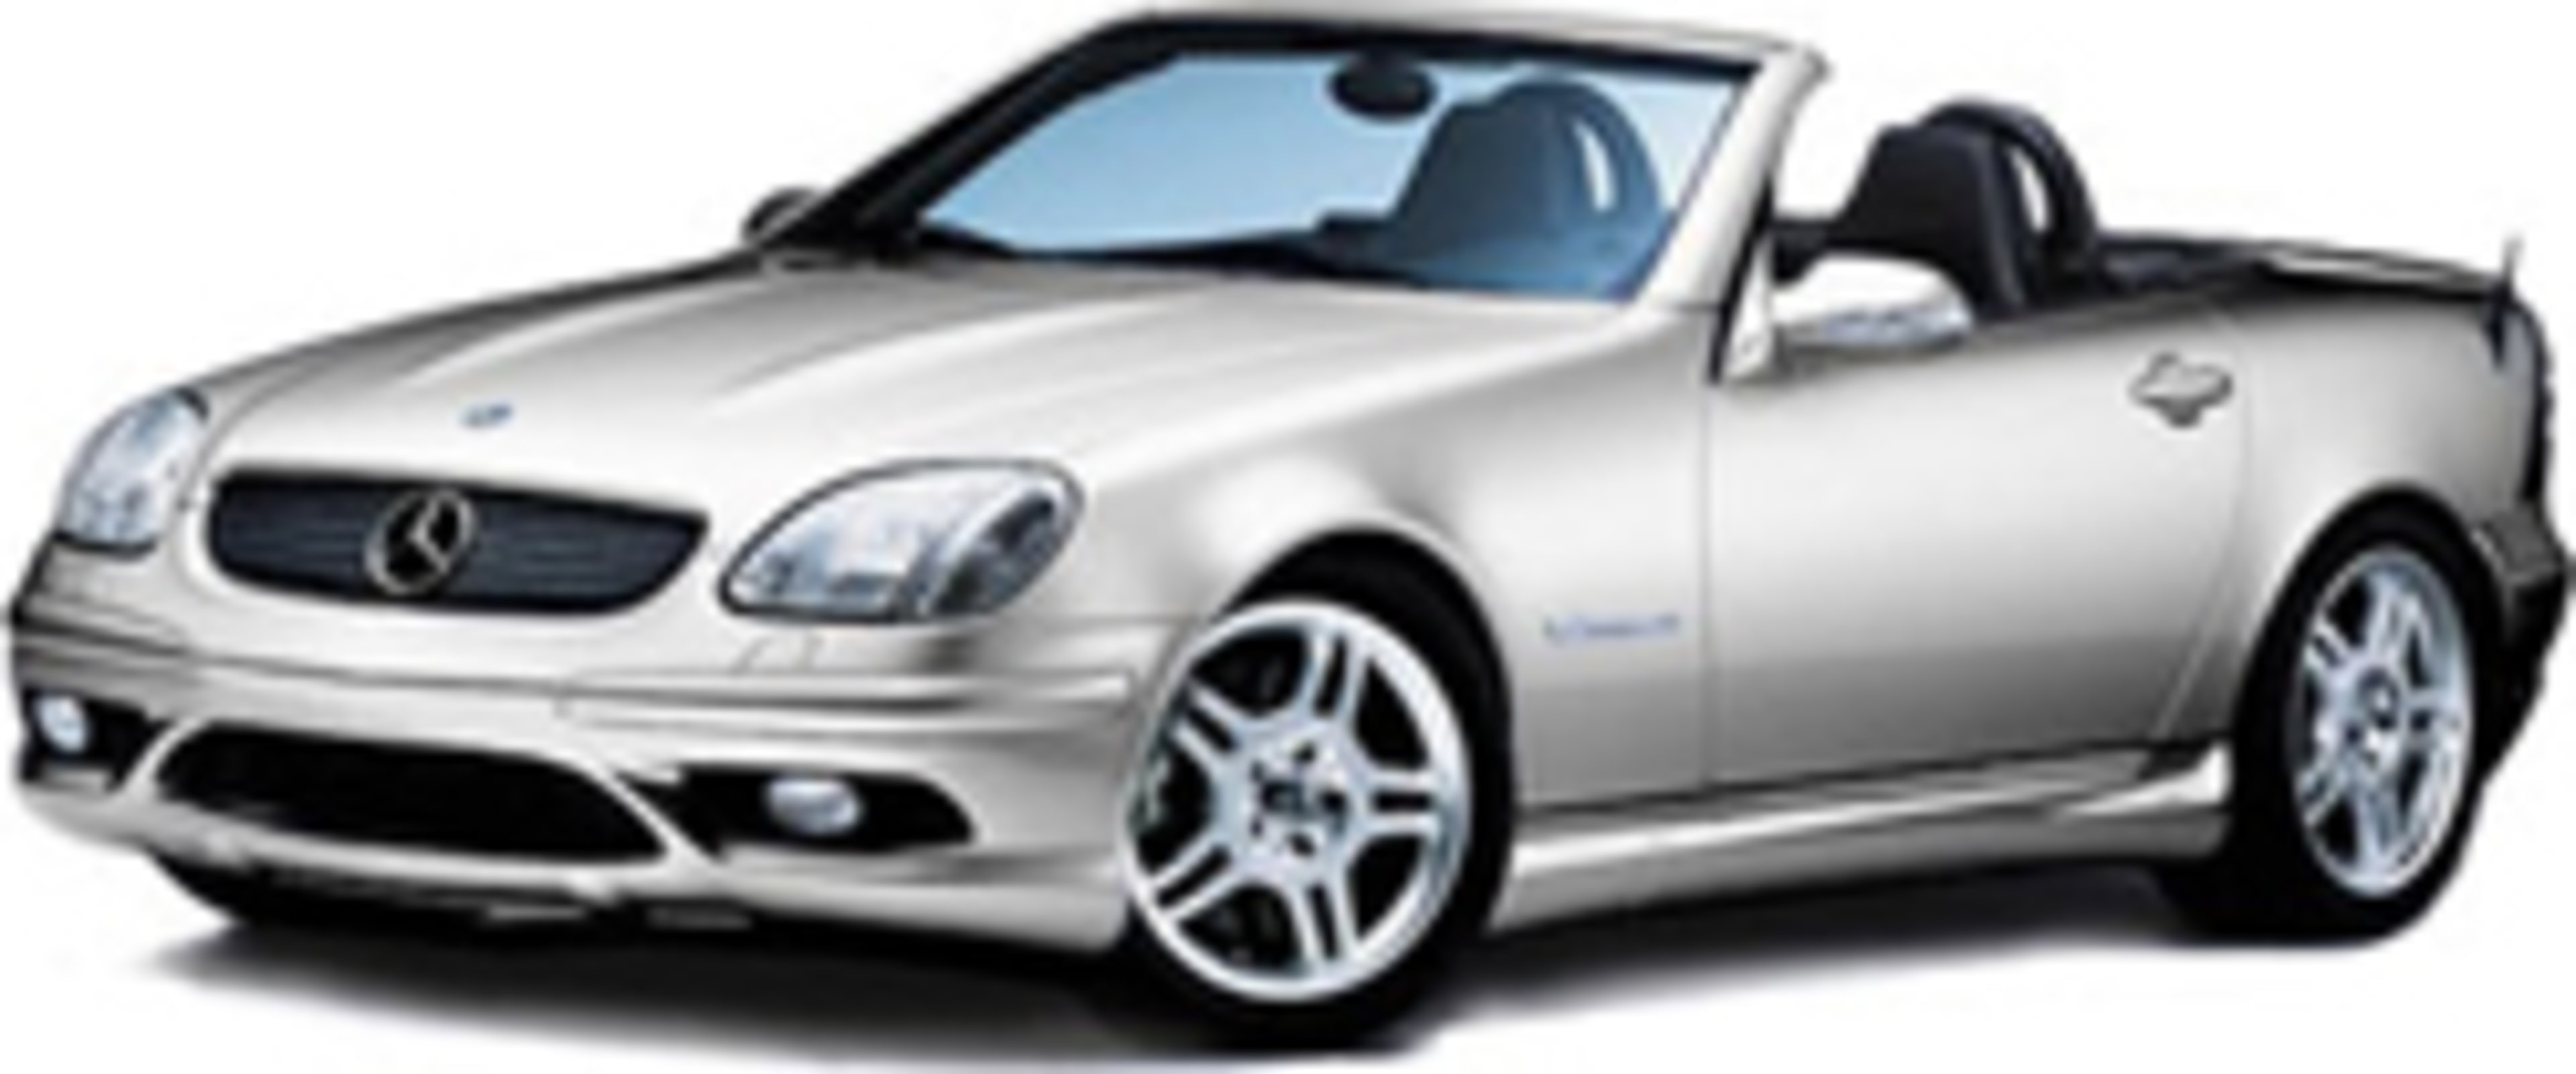 2002 Mercedes-Benz SLK320 Service and Repair Manual